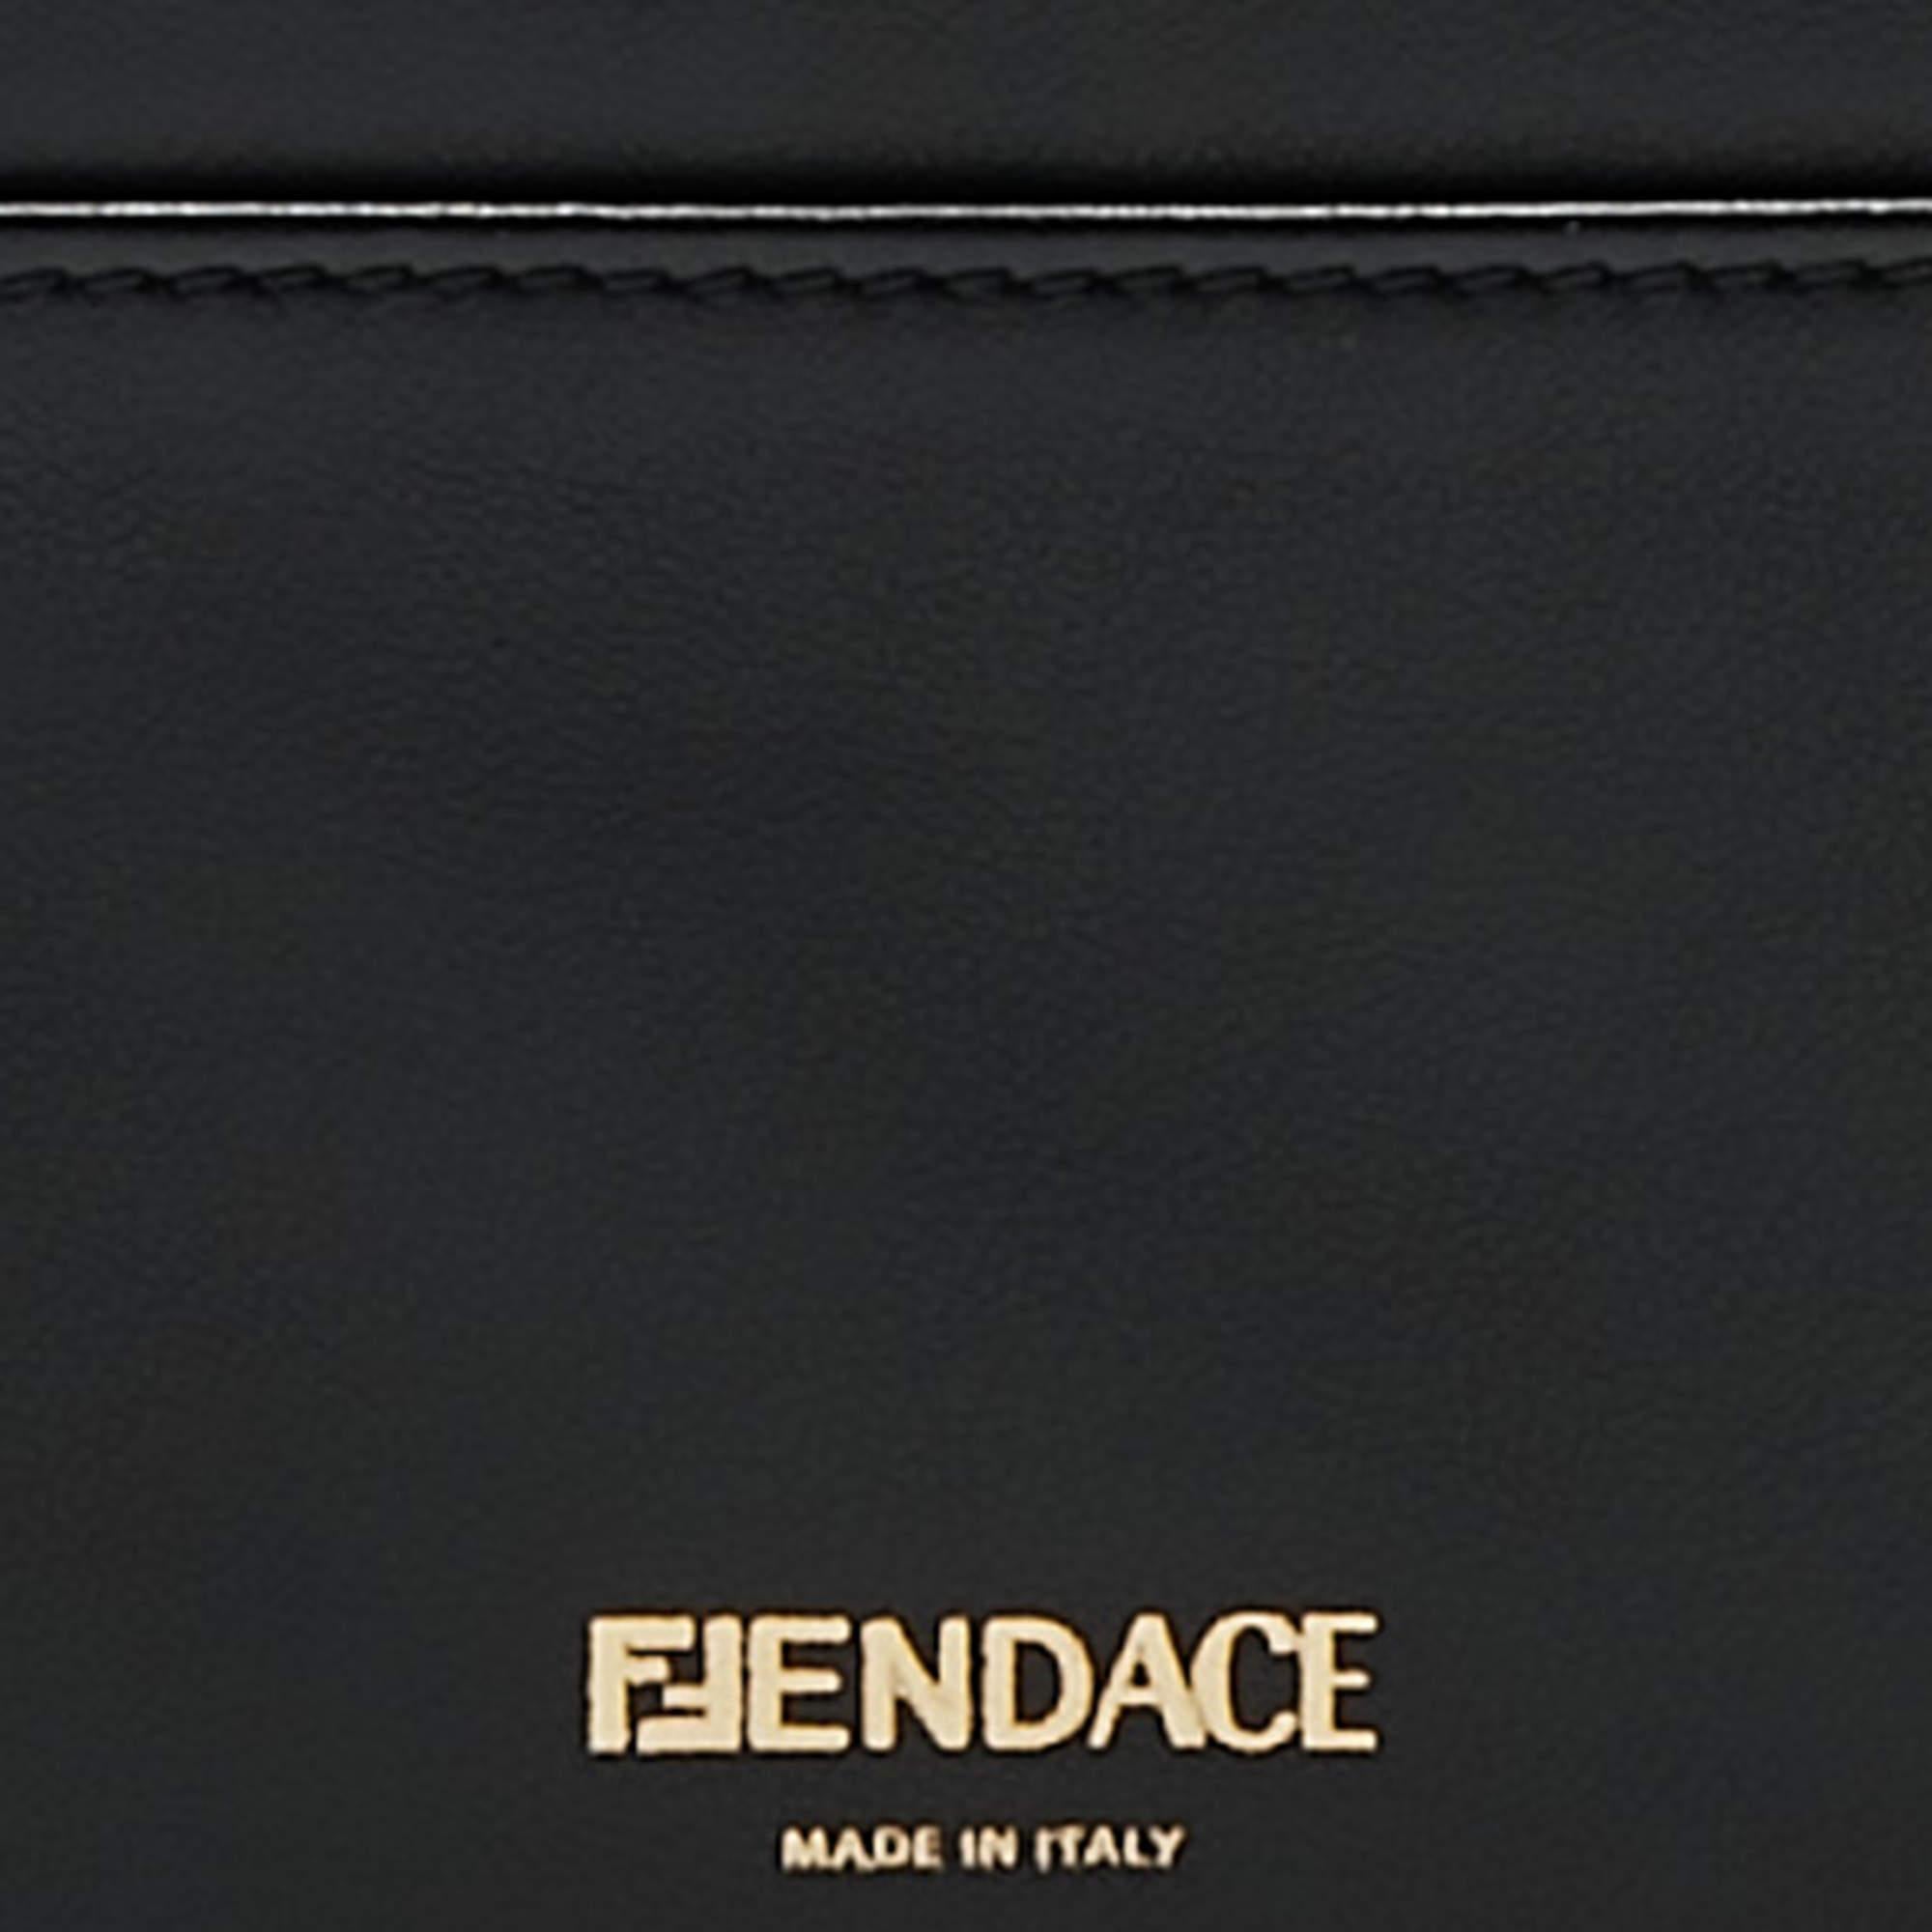 Dieses luxuriöse Fendi x Versace Fendace Schlüsselband besticht durch die exquisite Verarbeitung von schwarzem und goldenem Leder und verbindet die zeitlose Eleganz von Fendi mit dem opulenten Flair von Versace. Sie zeichnet sich durch schlanke